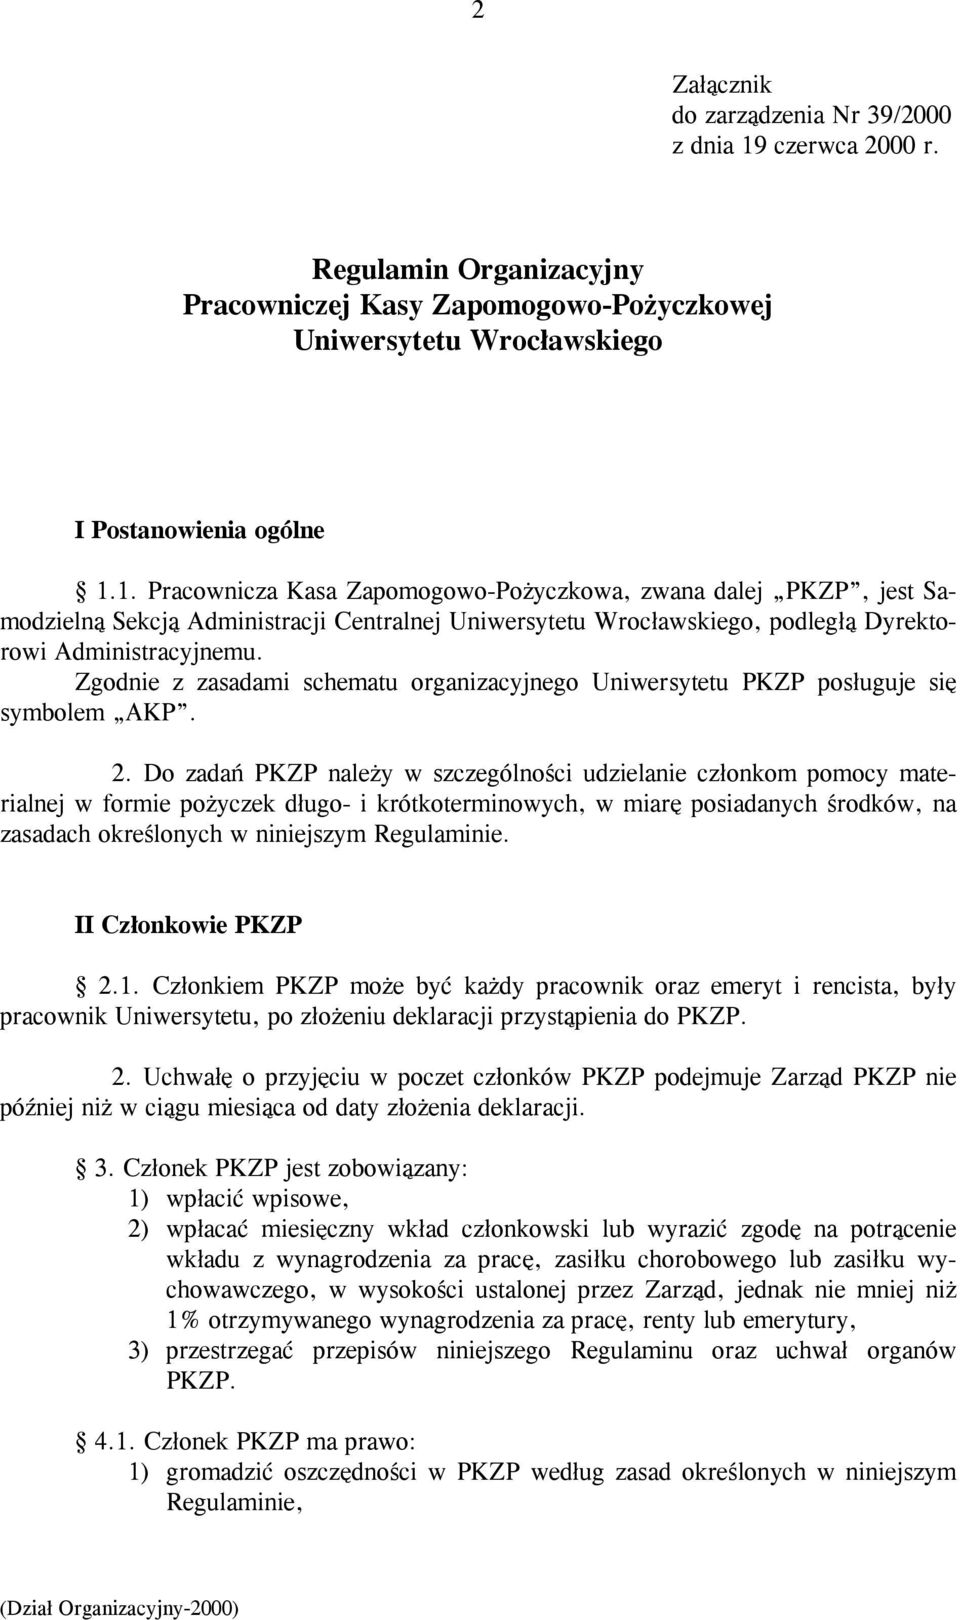 1. Pracownicza Kasa Zapomogowo-Pożyczkowa, zwana dalej PKZP, jest Samodzielną Sekcją Administracji Centralnej Uniwersytetu Wrocławskiego, podległą Dyrektorowi Administracyjnemu.